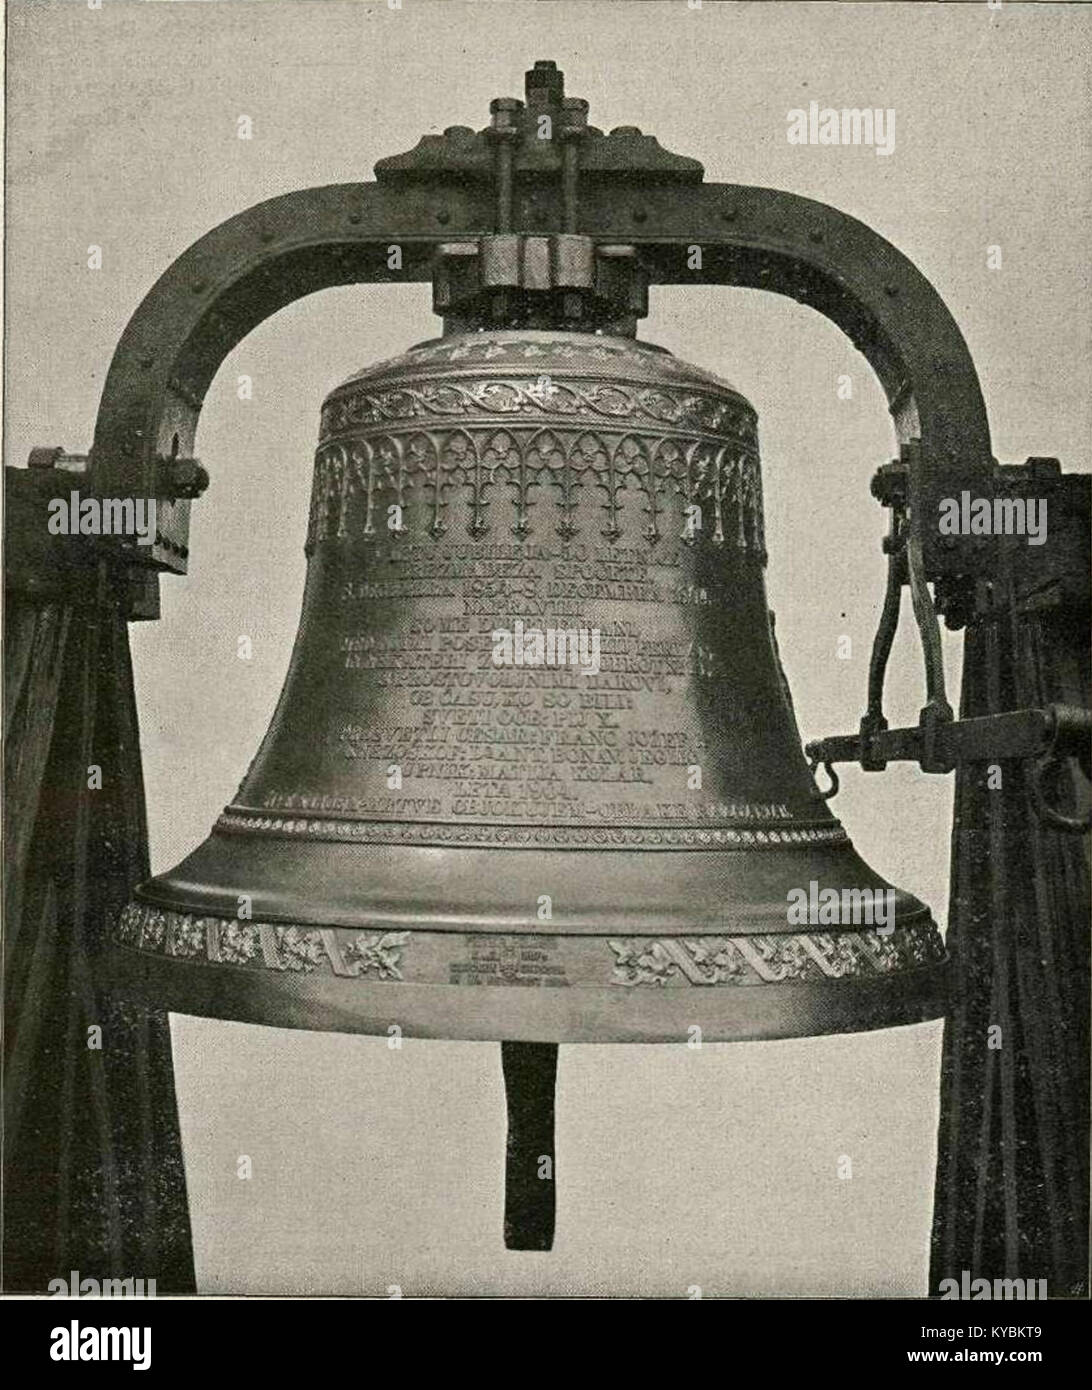 Najtežji zvon na Kranjskem v Polju pri Ljubljani 1904 Stock Photo